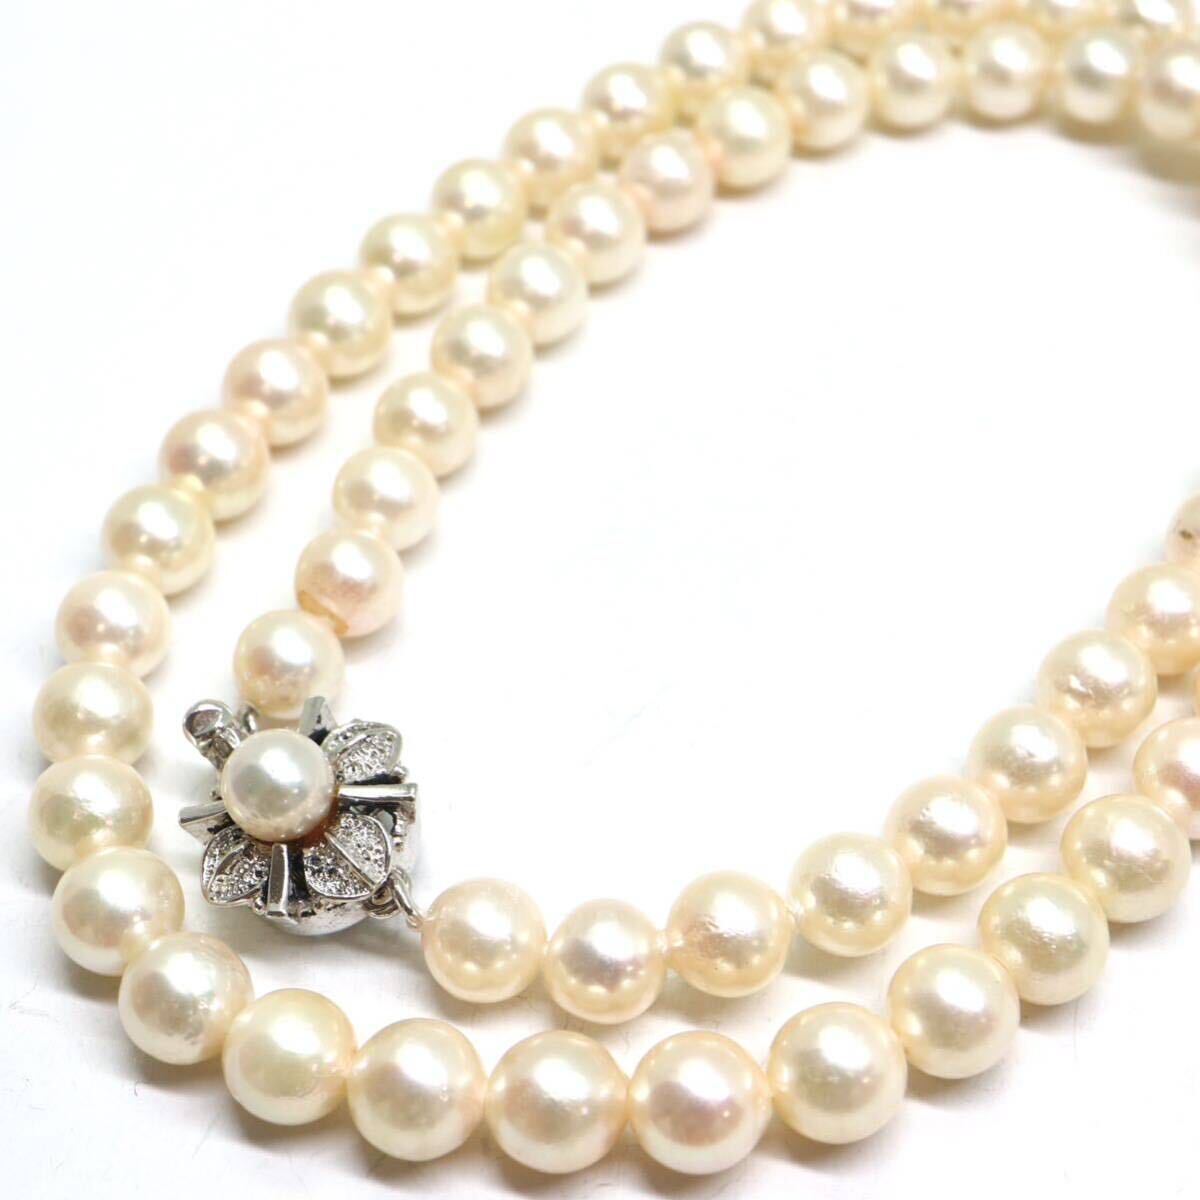 《アコヤ本真珠ネックレス》A 約6.0-6.5mm珠 24.2g 約41cm pearl necklace ジュエリー jewelry DB0/DC0の画像1